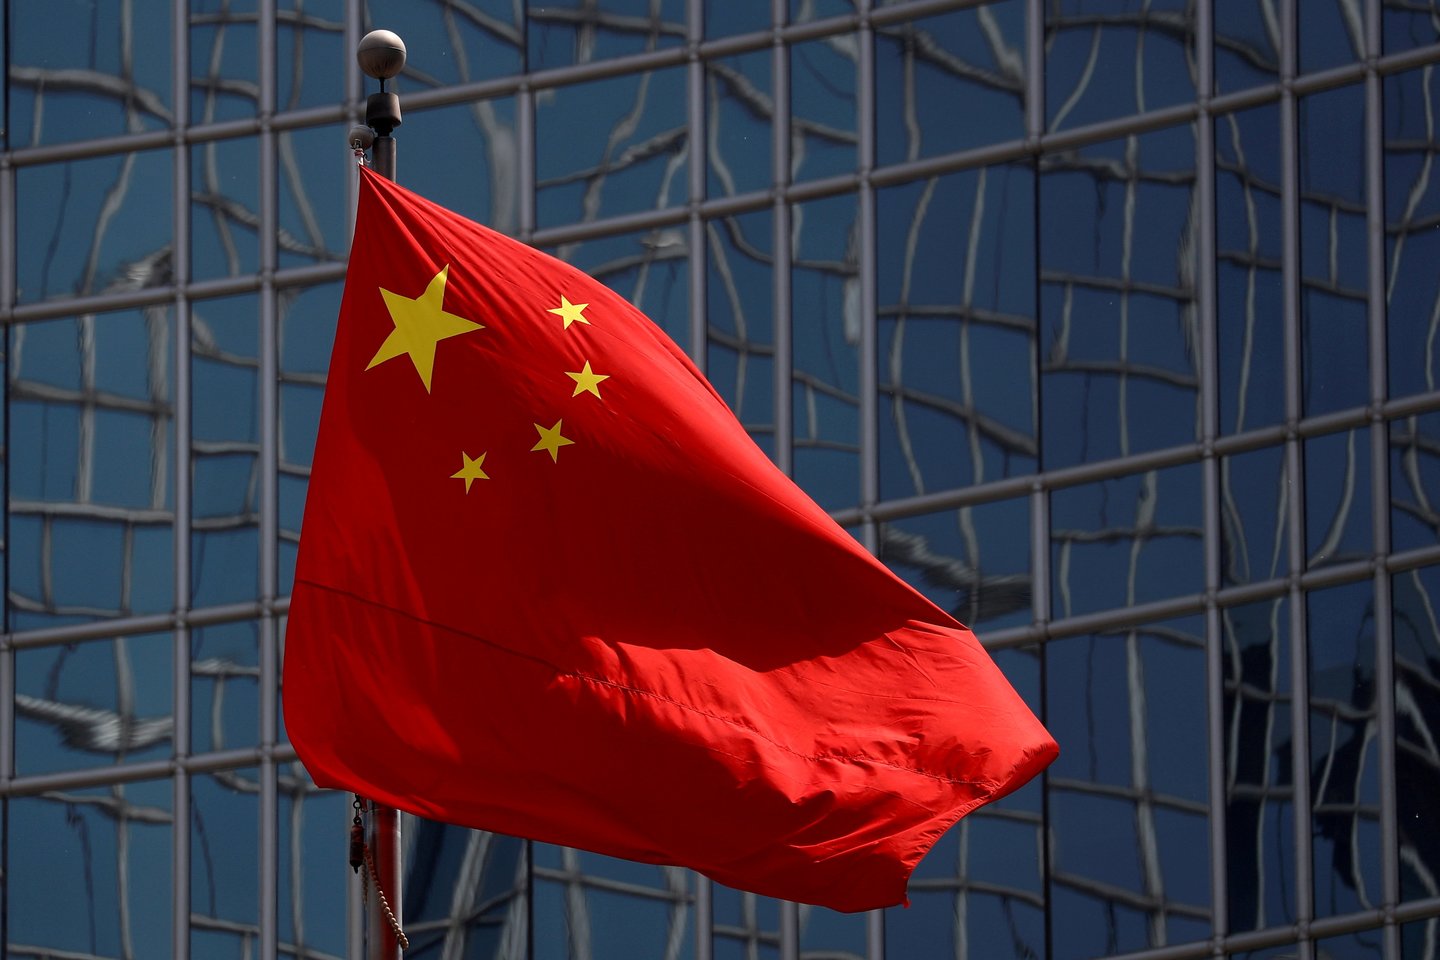  Kinijos teismas po slapto proceso trečiadienį 18 metų kalėti nuteisė milijardierių Sun Dawu už „problemų kėlimą“.<br>REUTERS/Scanpix nuotr.